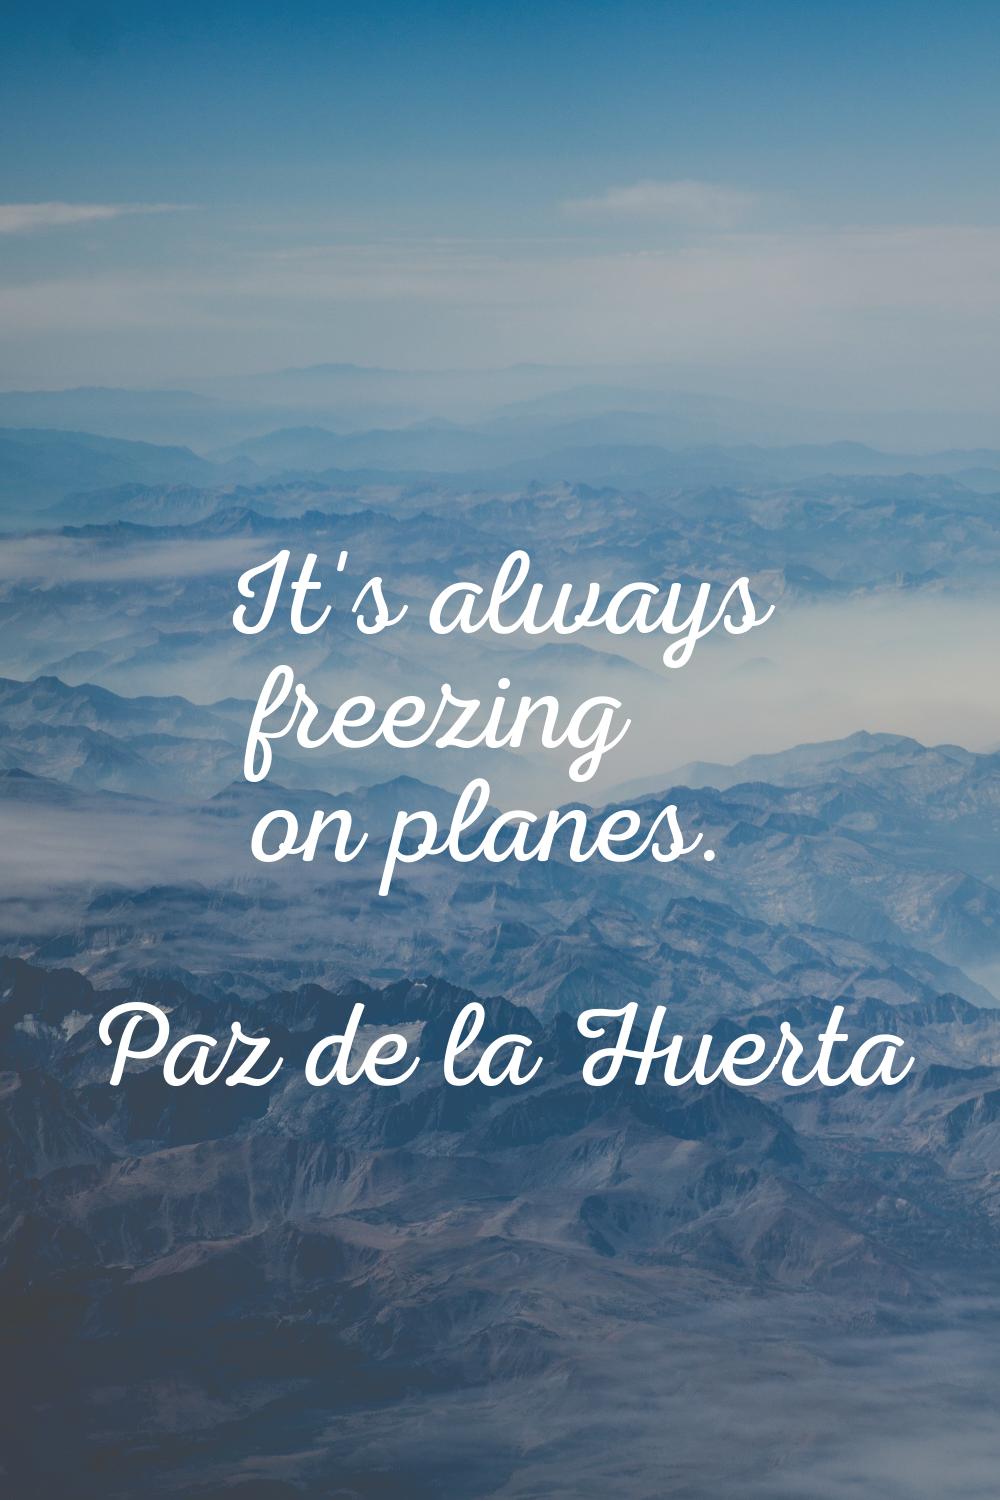 It's always freezing on planes.